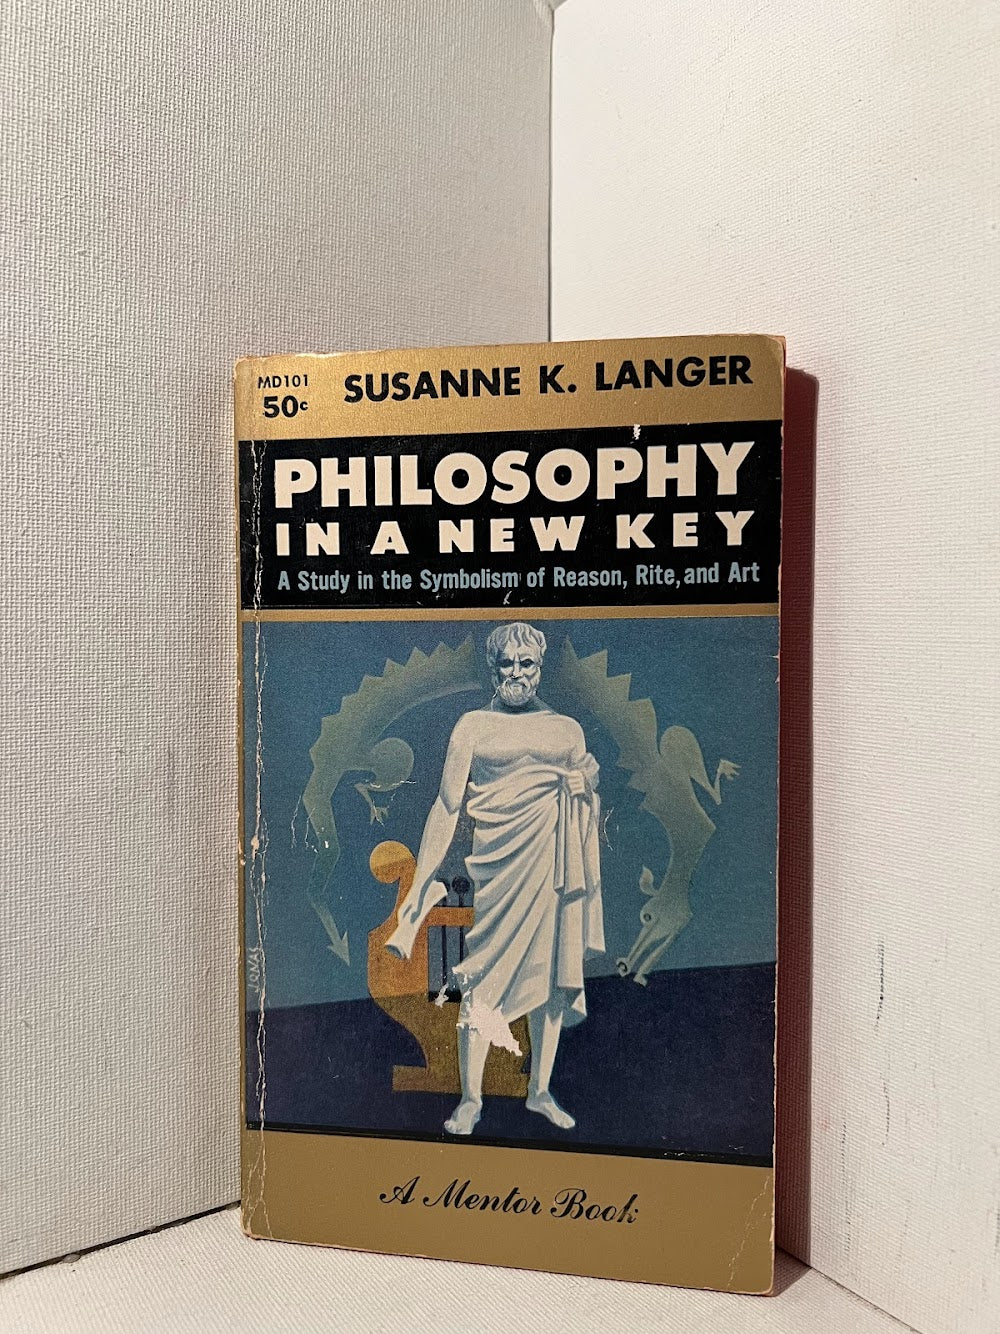 Philosophy in a New Key by Susanne K. Langer